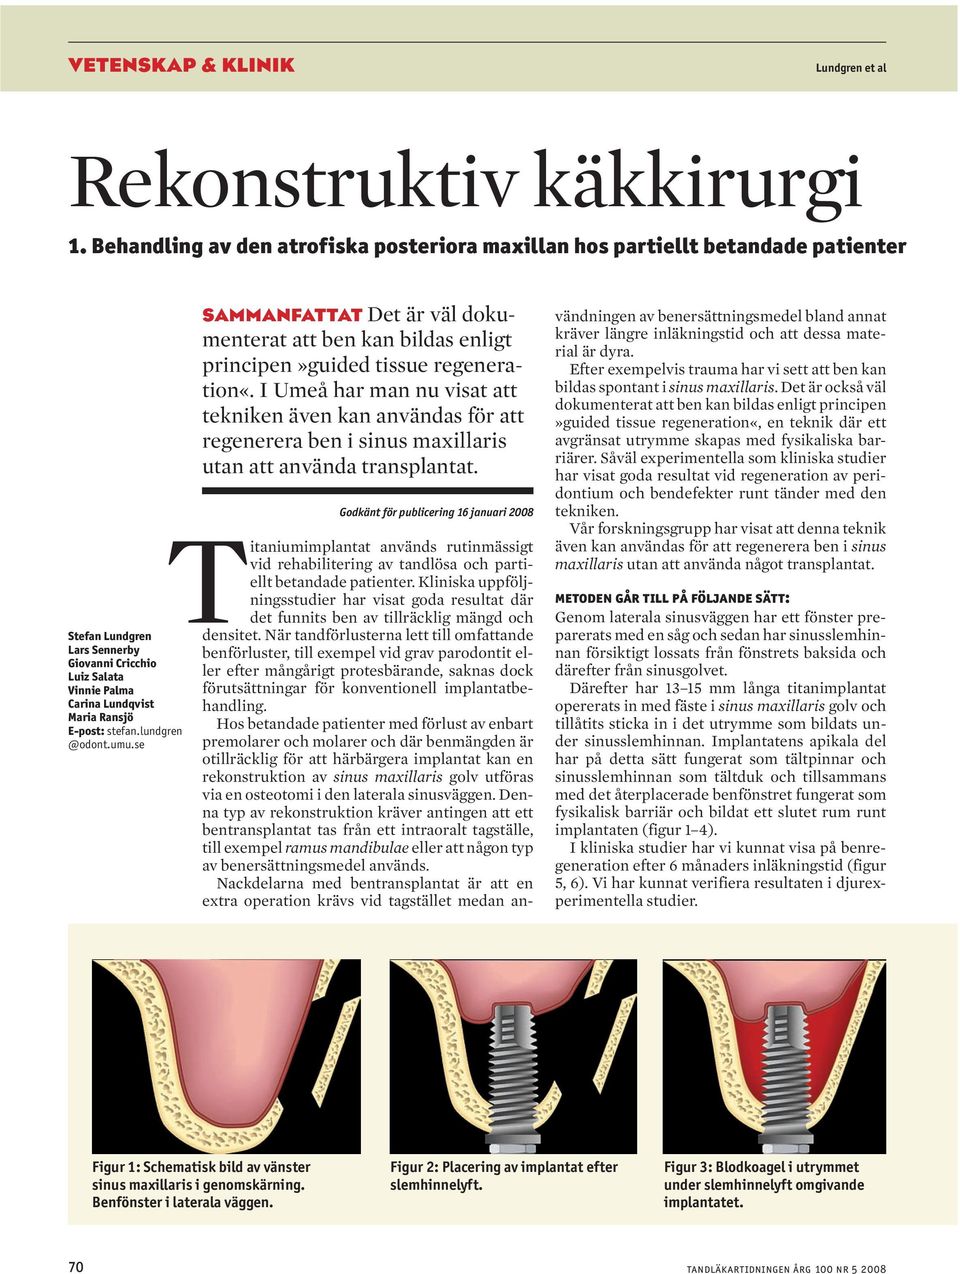 lundgren @odont.umu.se sammanfattat Det är väl dokumenterat att ben kan bildas enligt principen»guided tissue regeneration«.